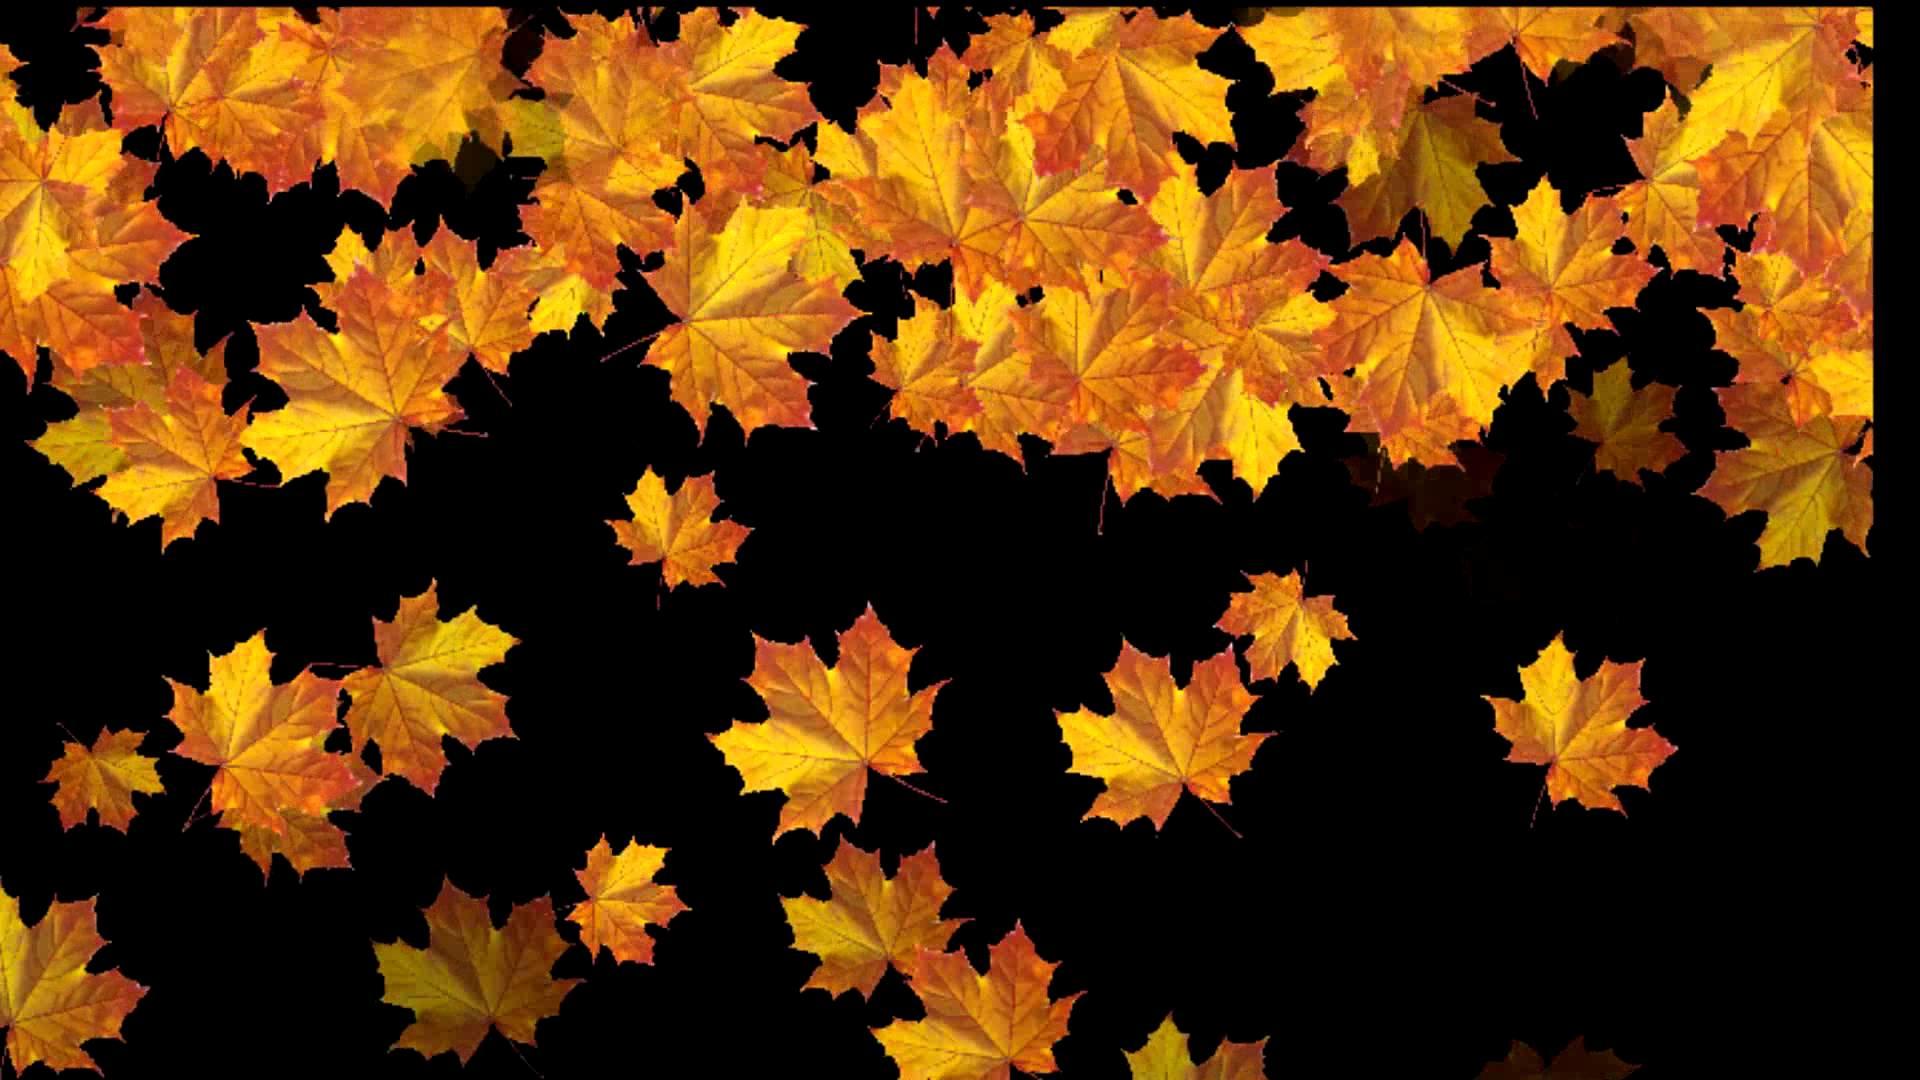 Шелестят золотистые листья